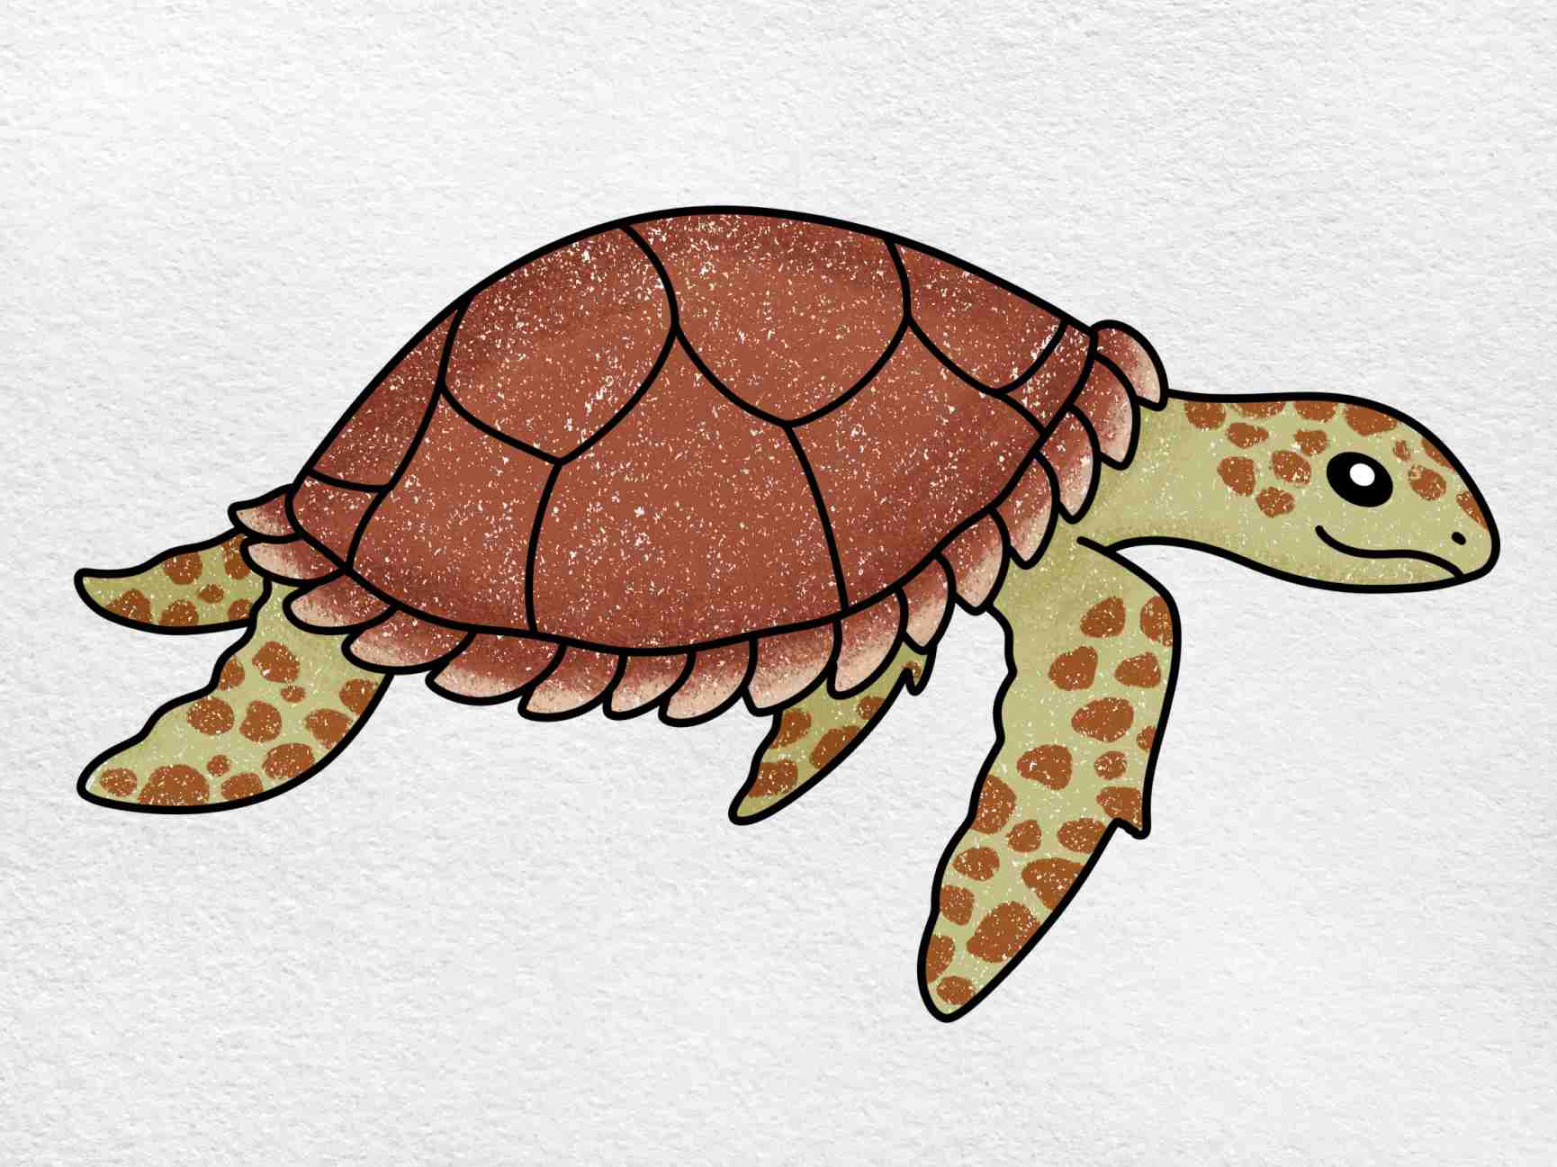 Hawksbill Turtle Drawing - HelloArtsy